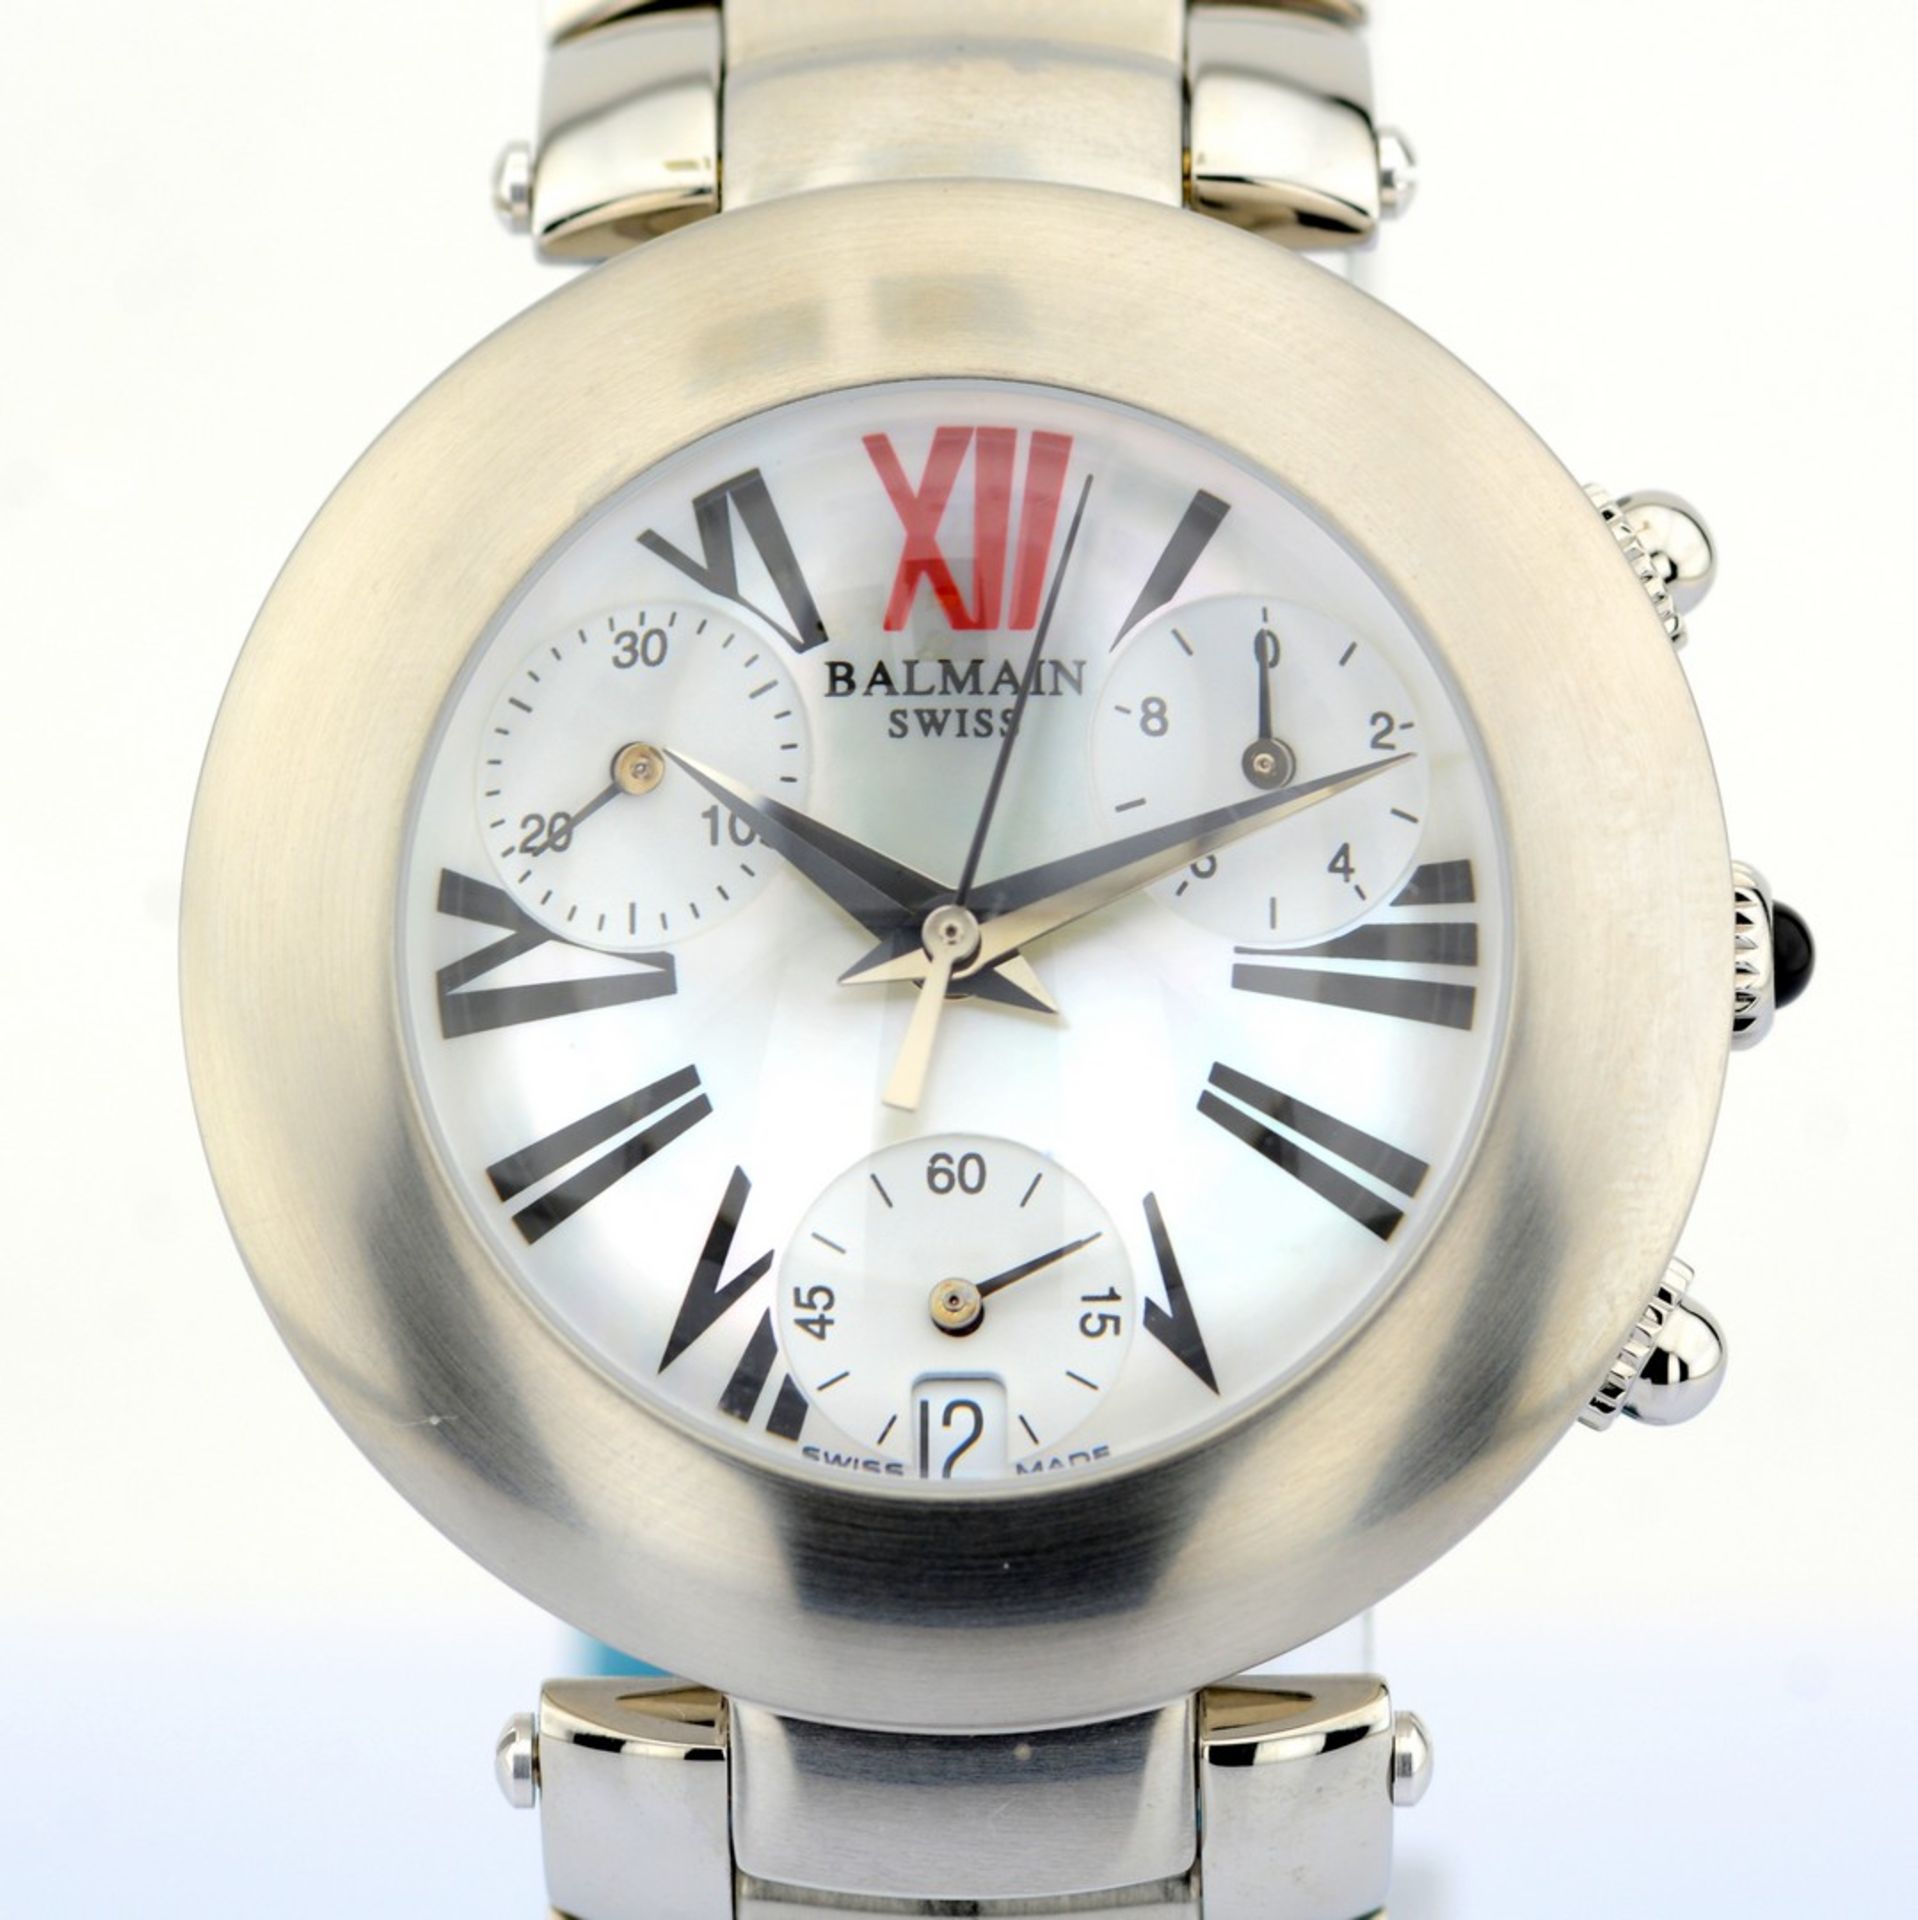 Pierre Balmain / Bubble Swiss Chronograph Date - Gentlemen's Steel Wristwatch